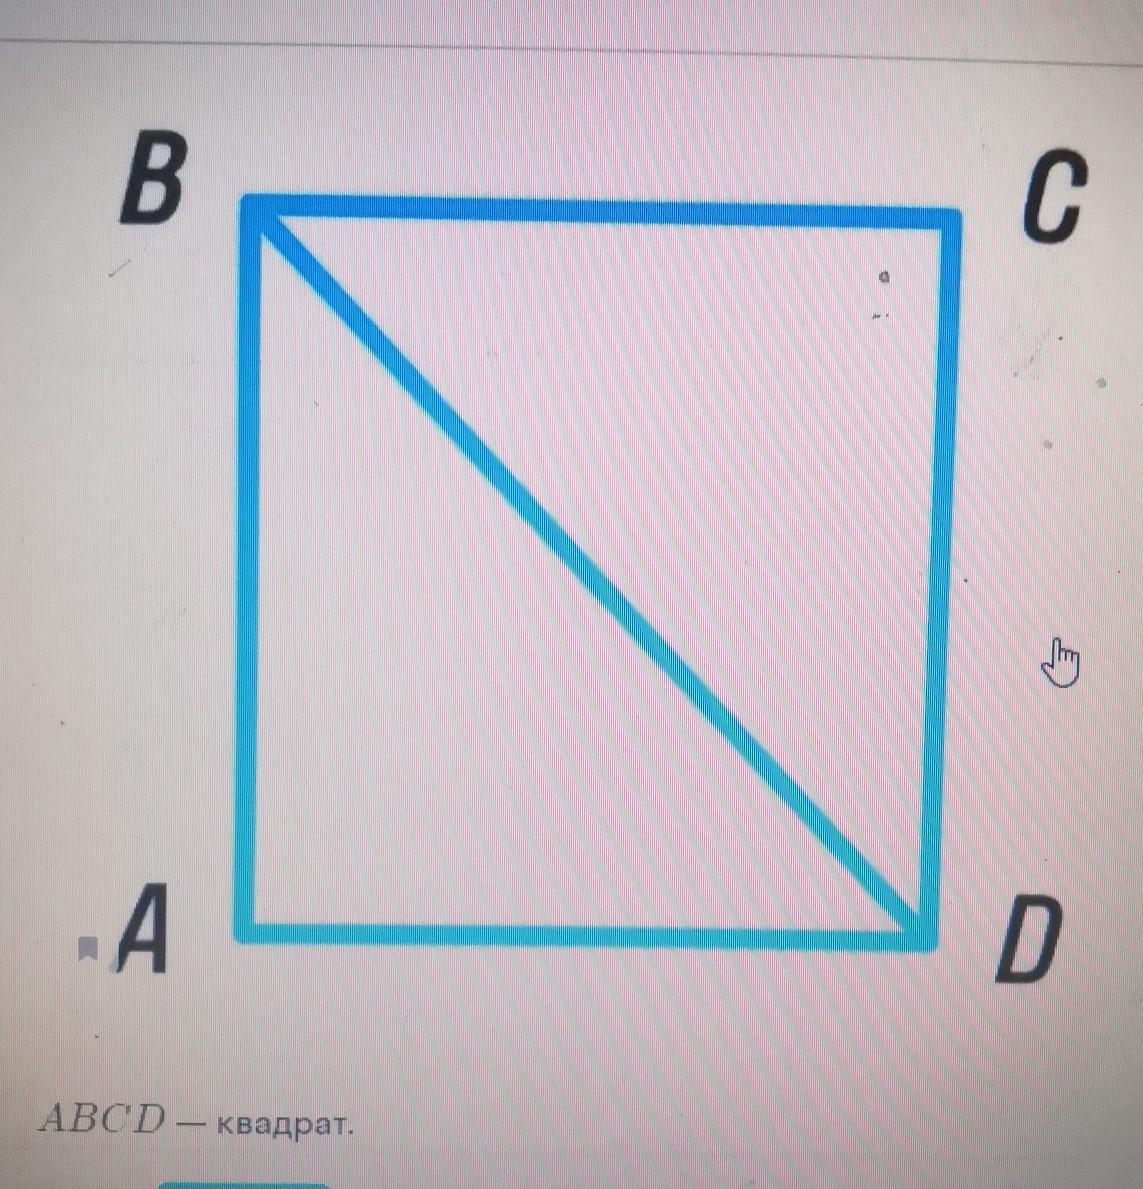 Чему равна площадь квадрата, если площадь треугольника BCD равна 18 см²?